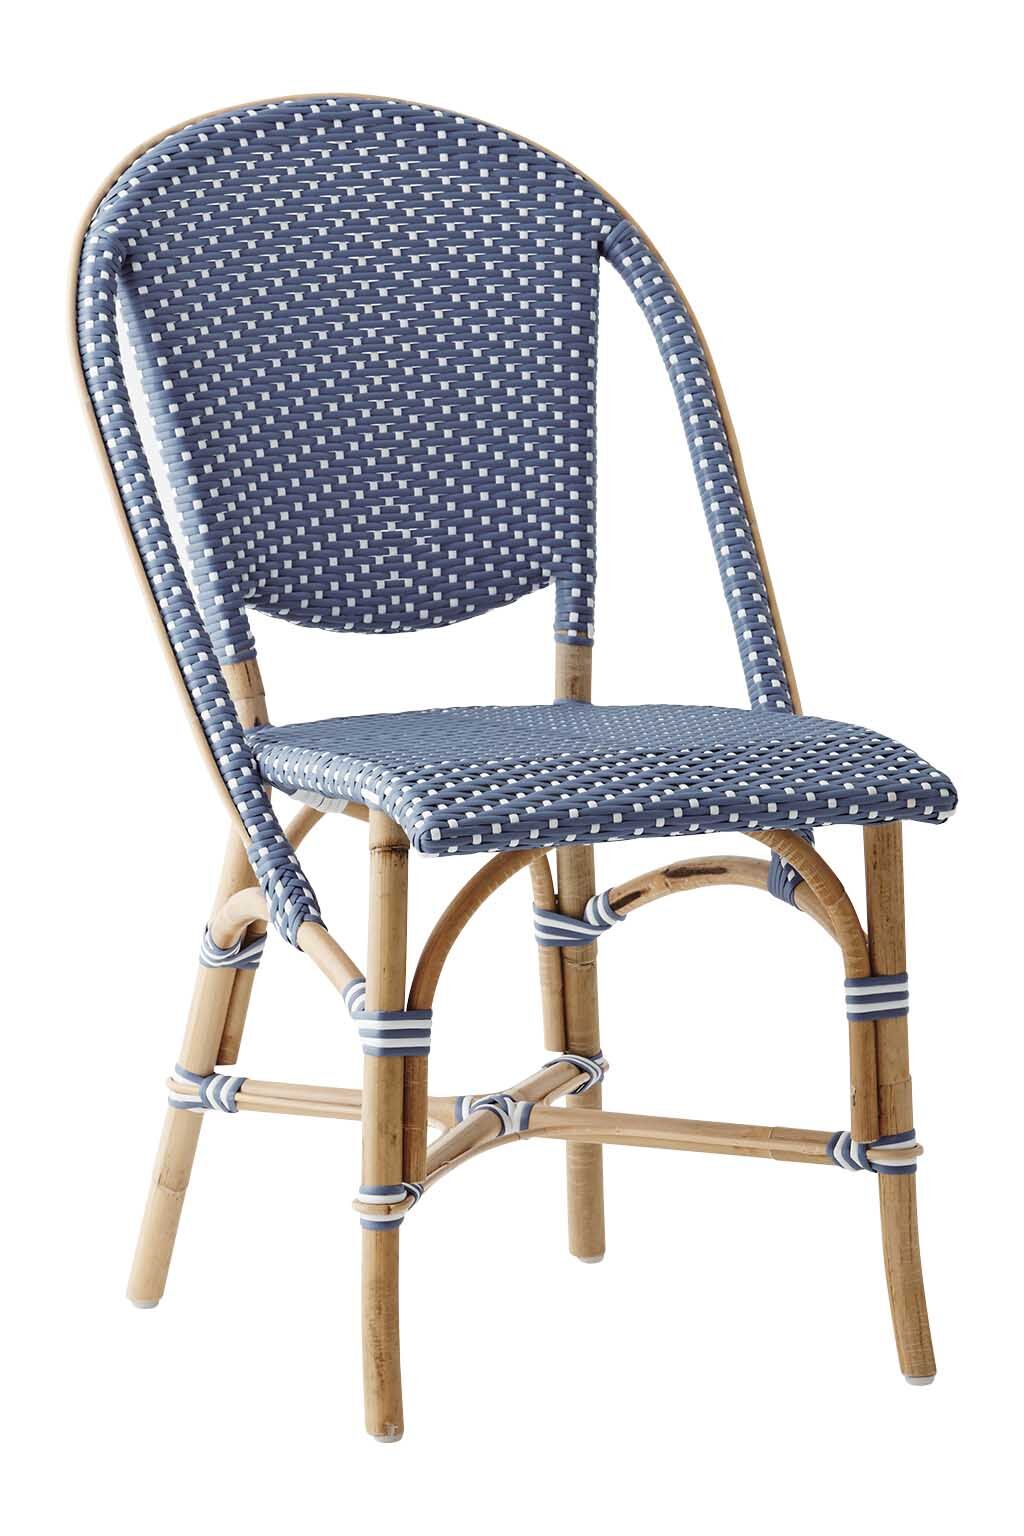 Sika Design Chaise repas empilable en rotin et fibre synthétique bleu